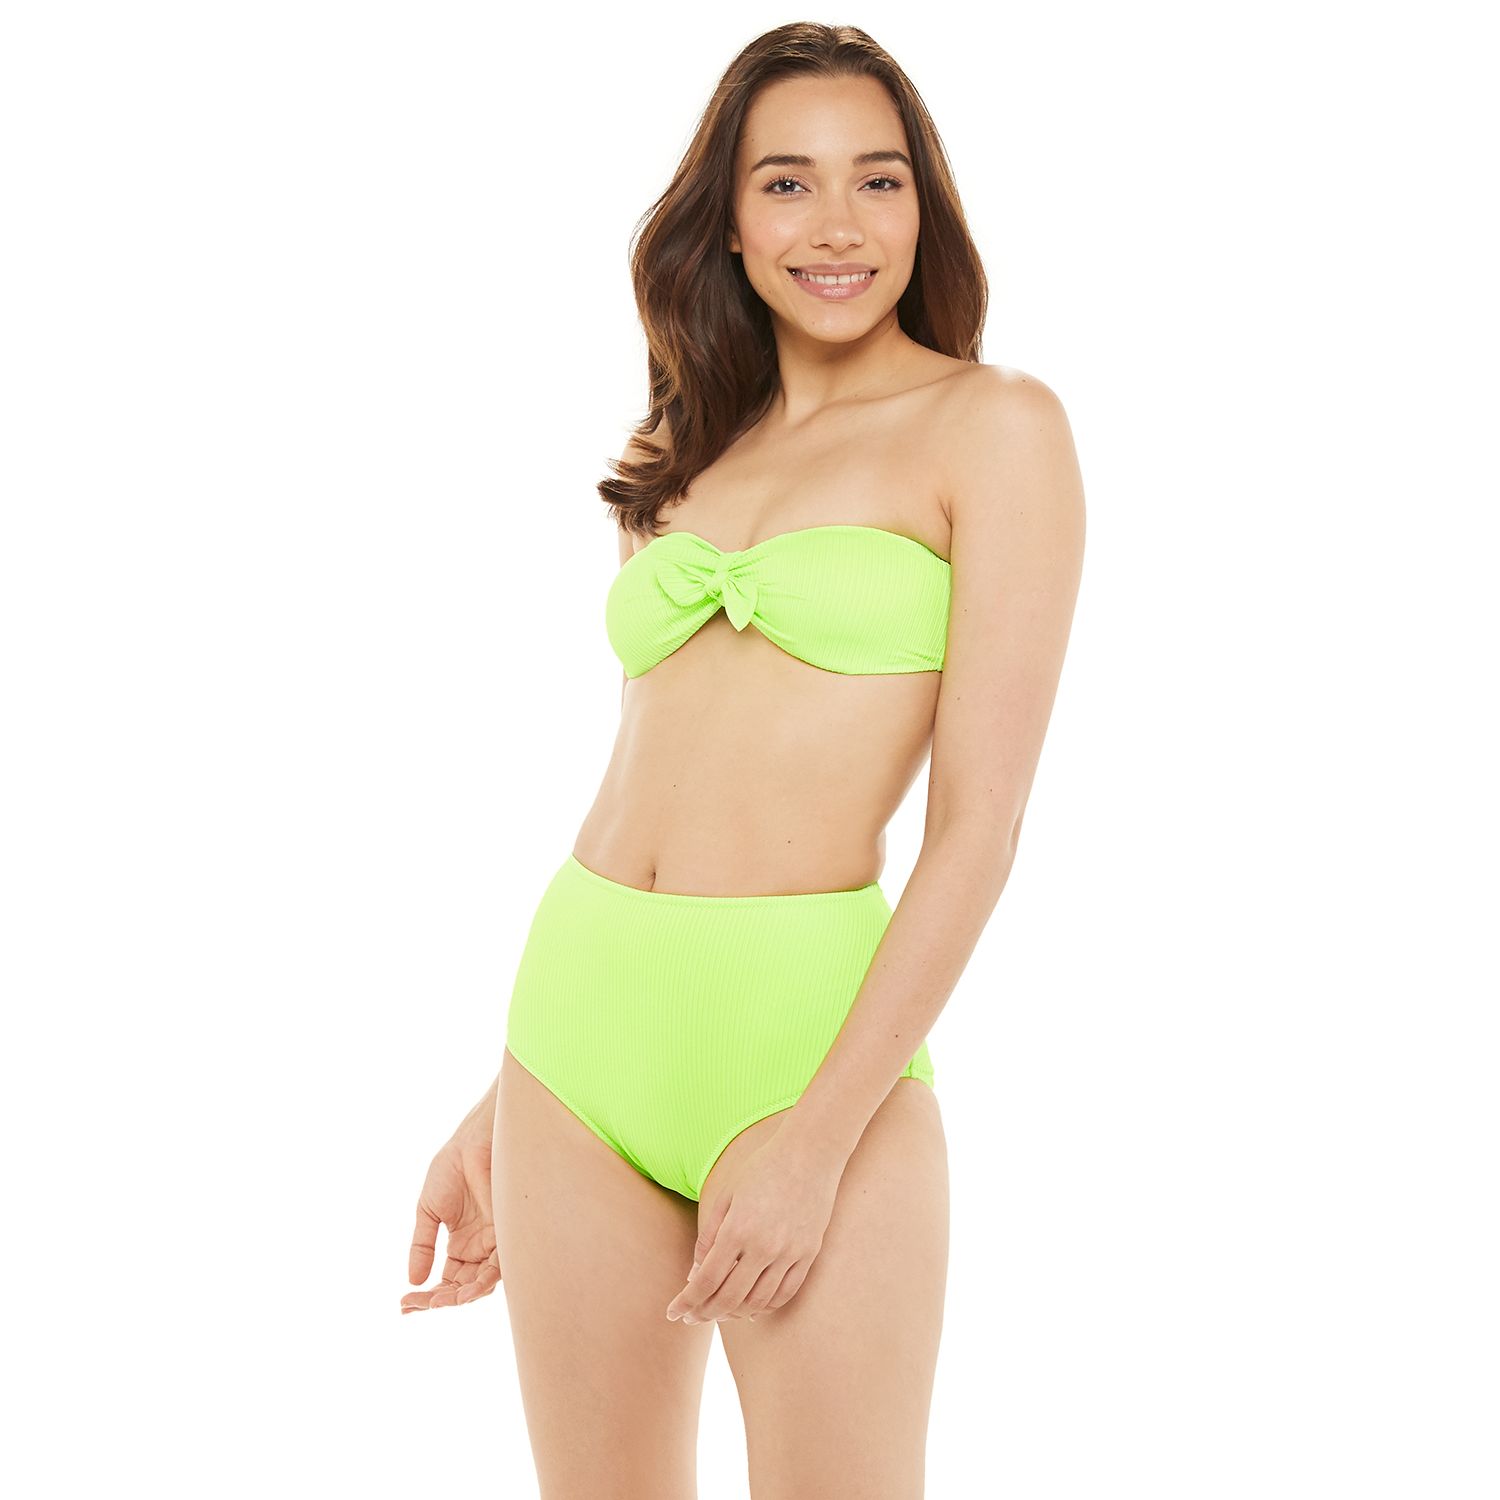 bandeau bikini top with high waisted bottoms